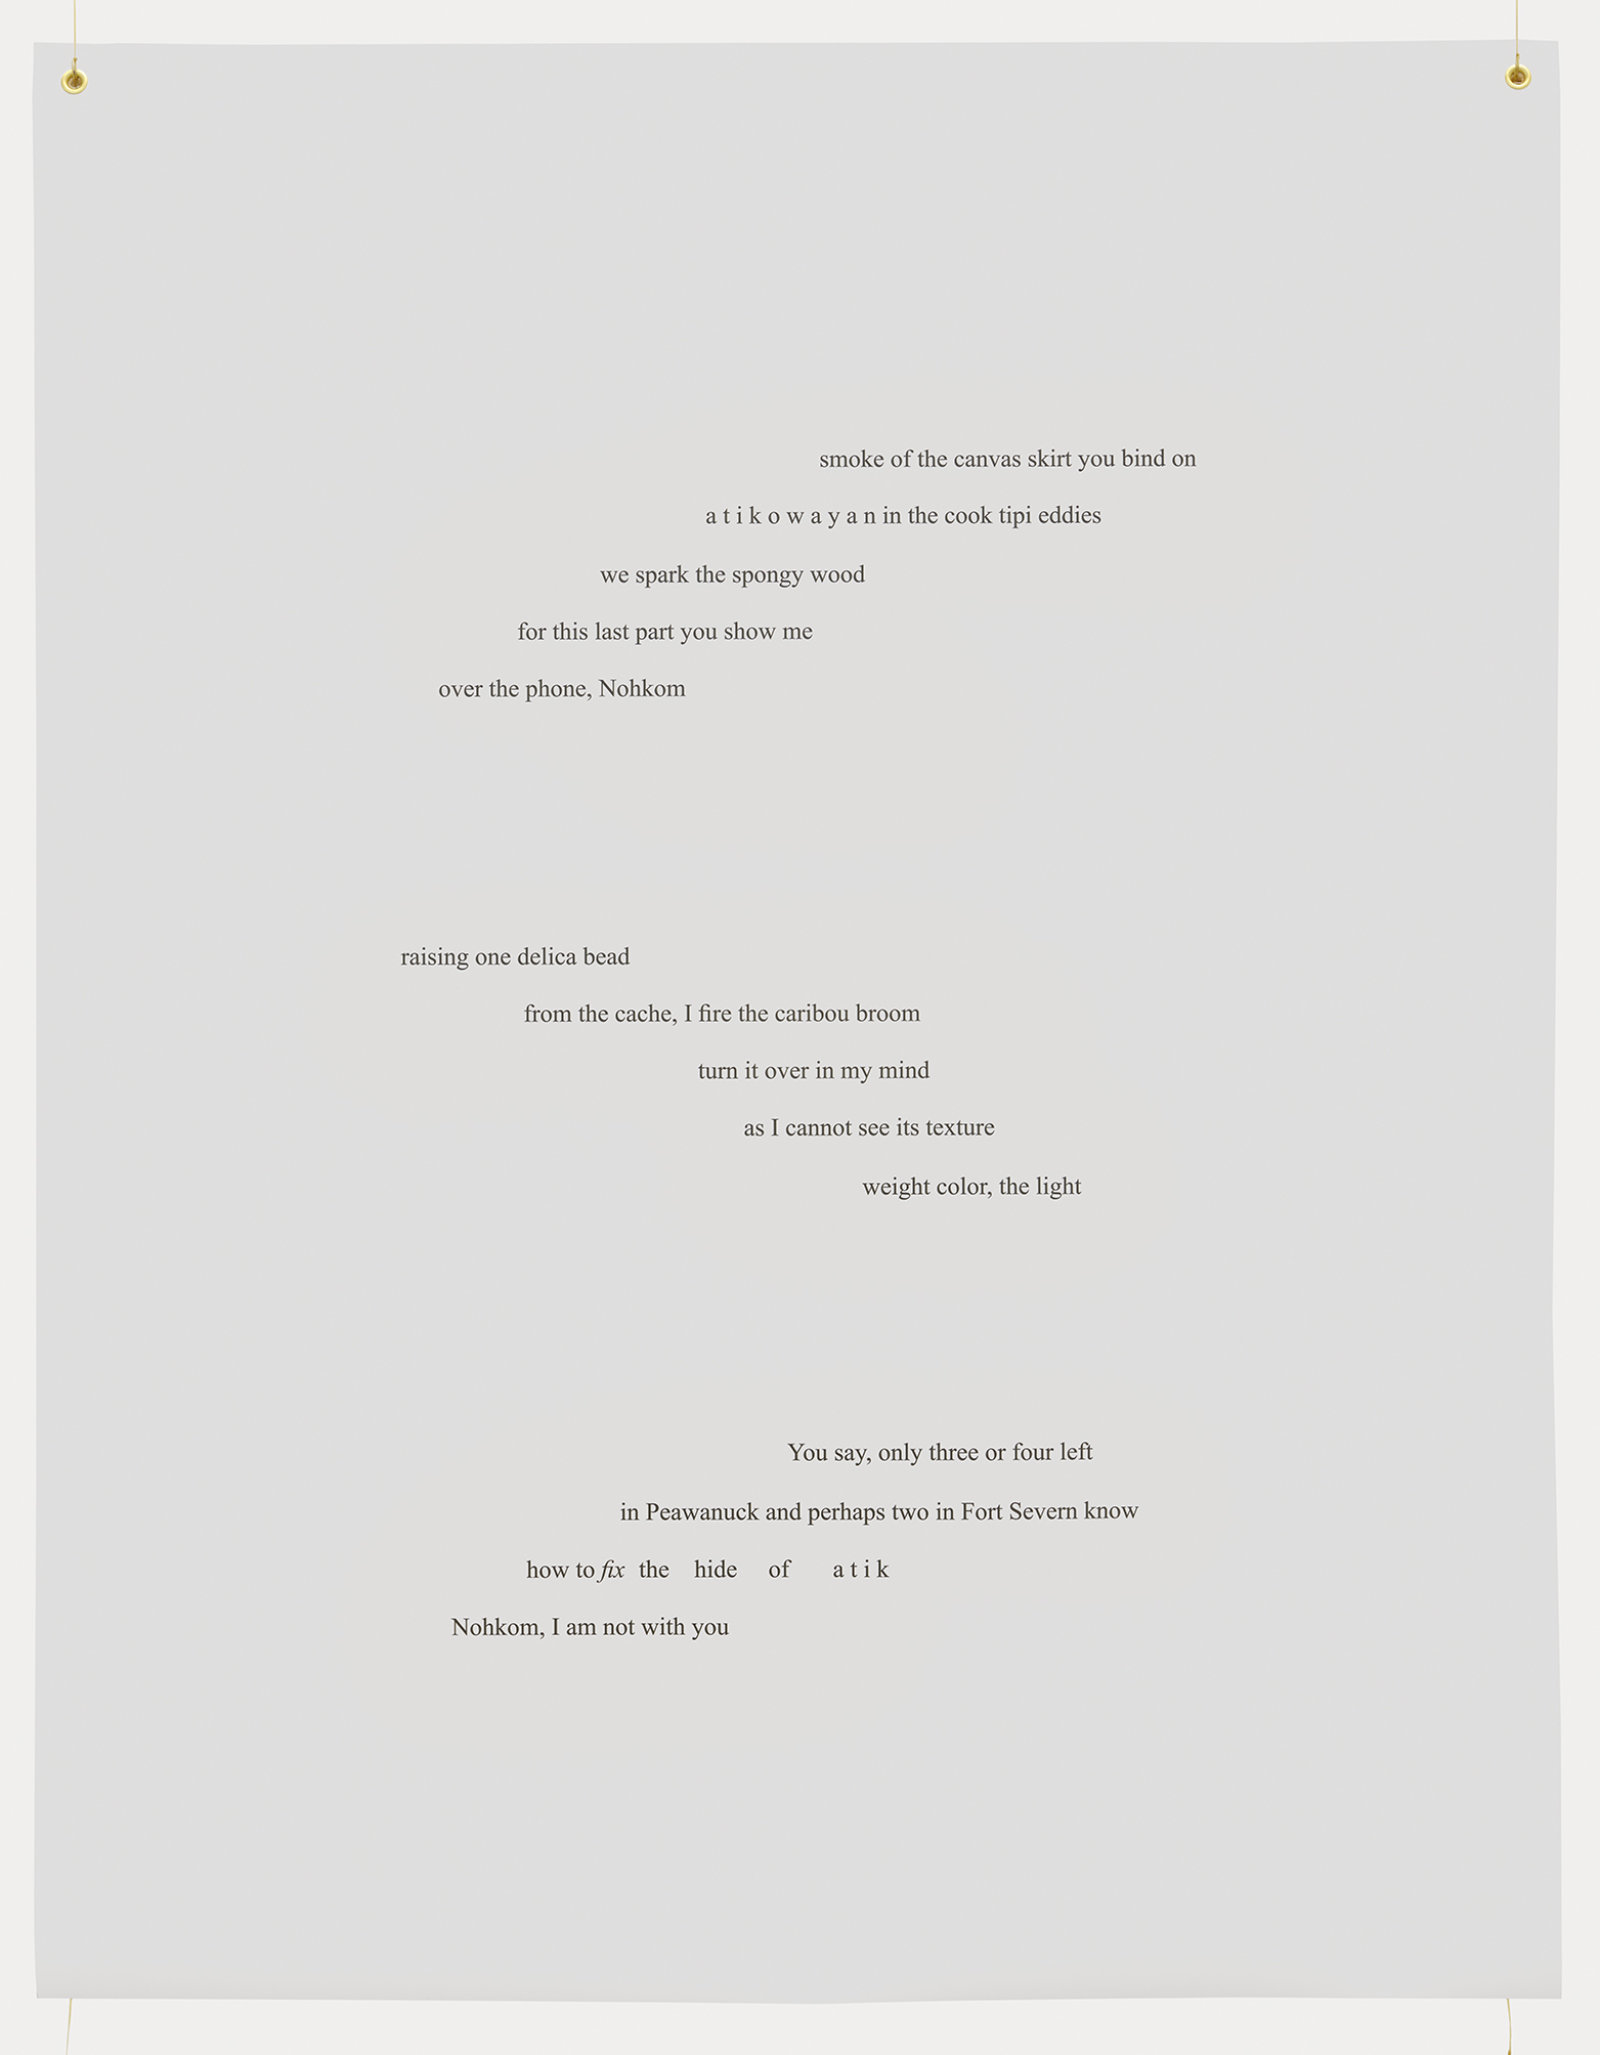 Tanya Lukin Linklater, Slow Scrape, 2013–2020, 5 banners, canvas, grommets, sinew, each 66 x 51 in. (168 x 130 cm)